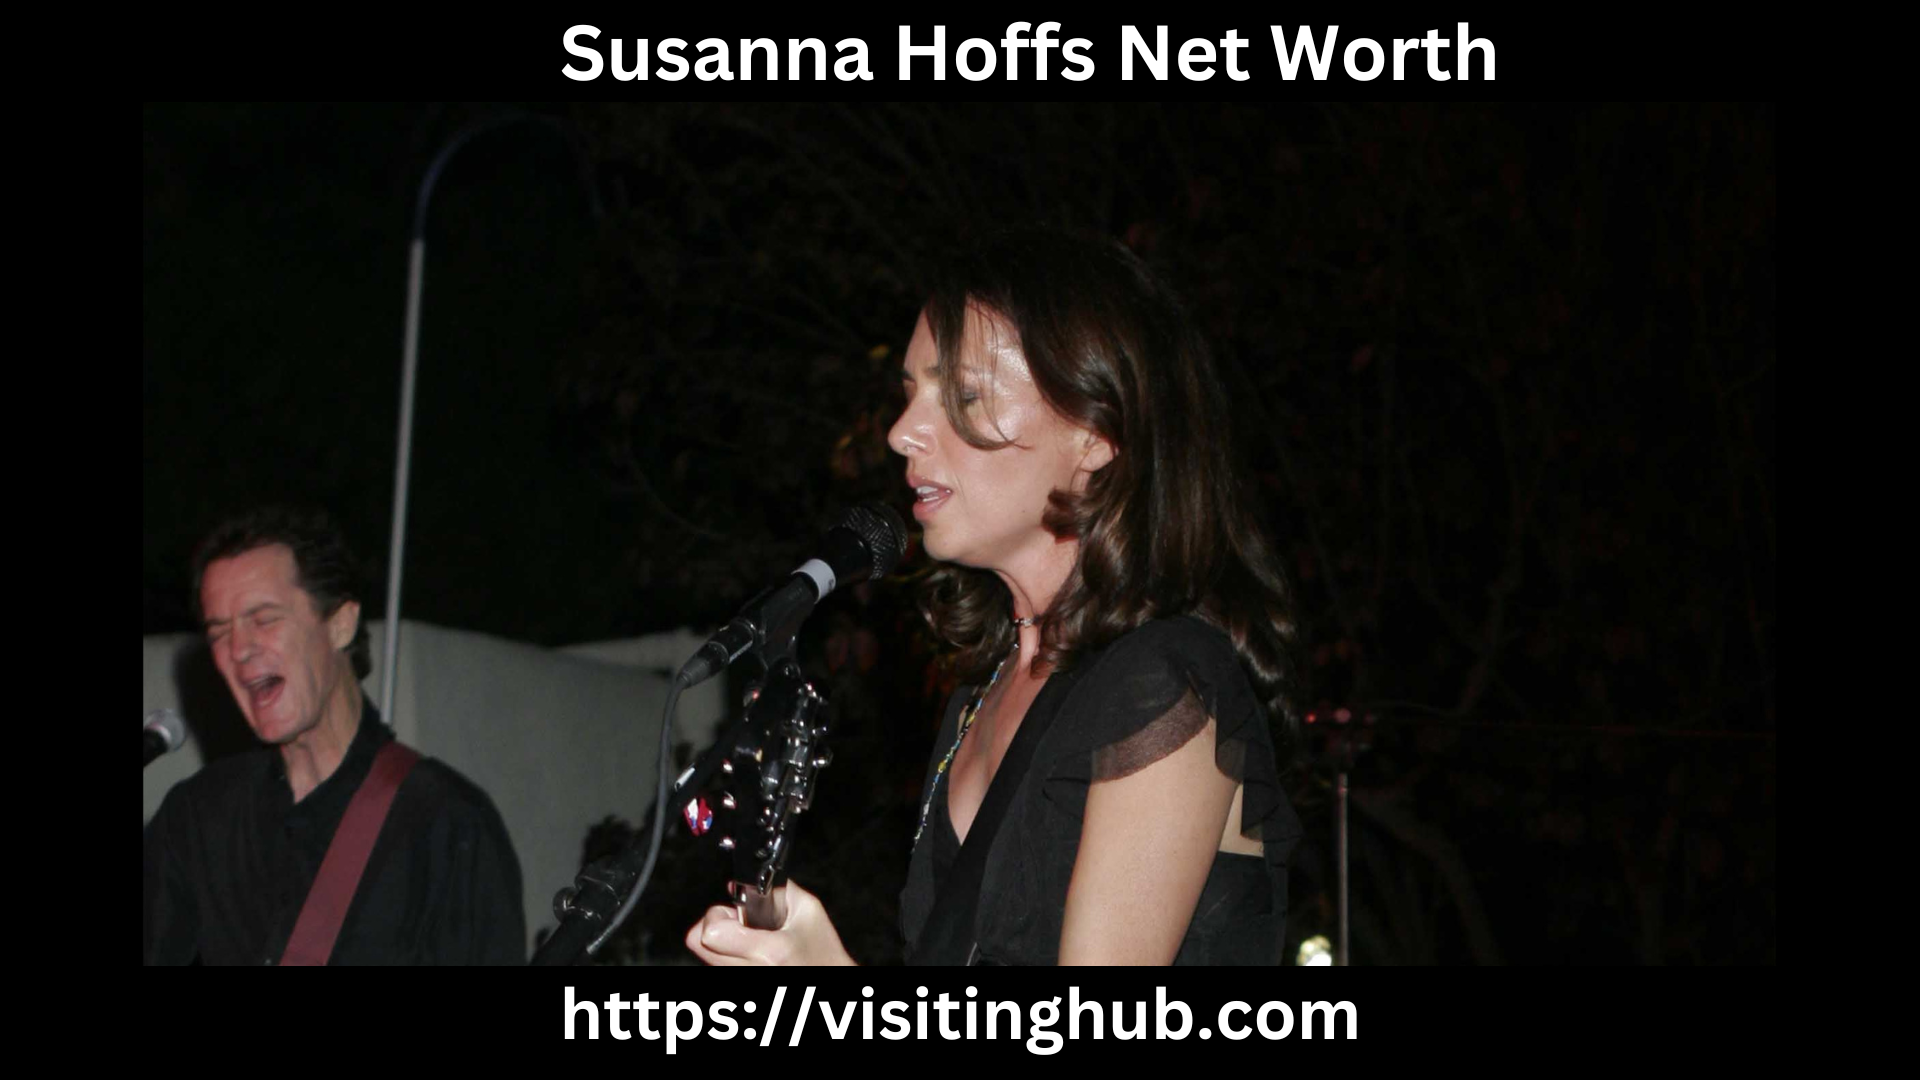 Susanna Hoffs Net Worth